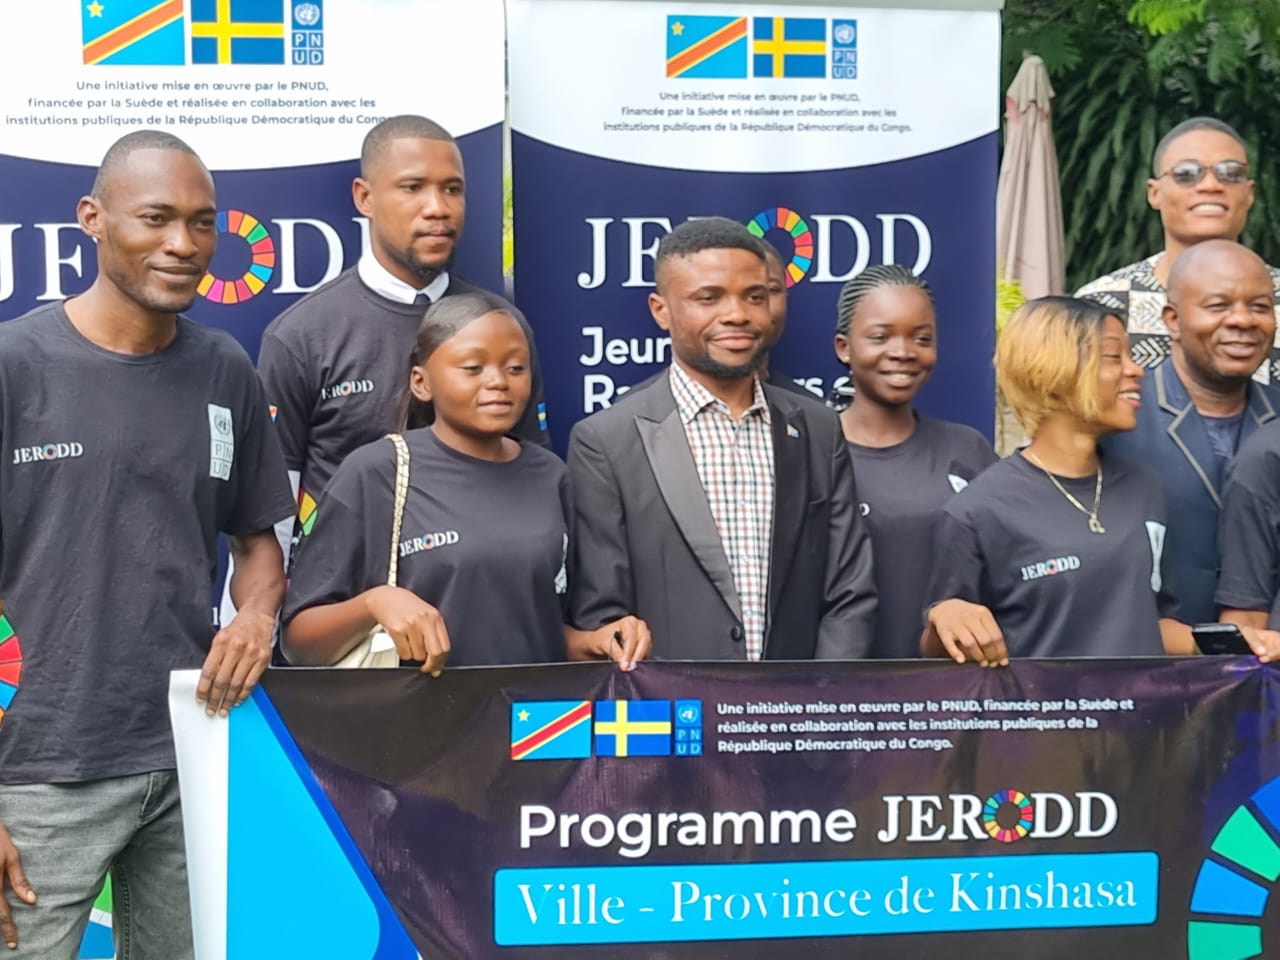 Les jeunes de Kindshasa mobilisés pour le lancement de JERODD